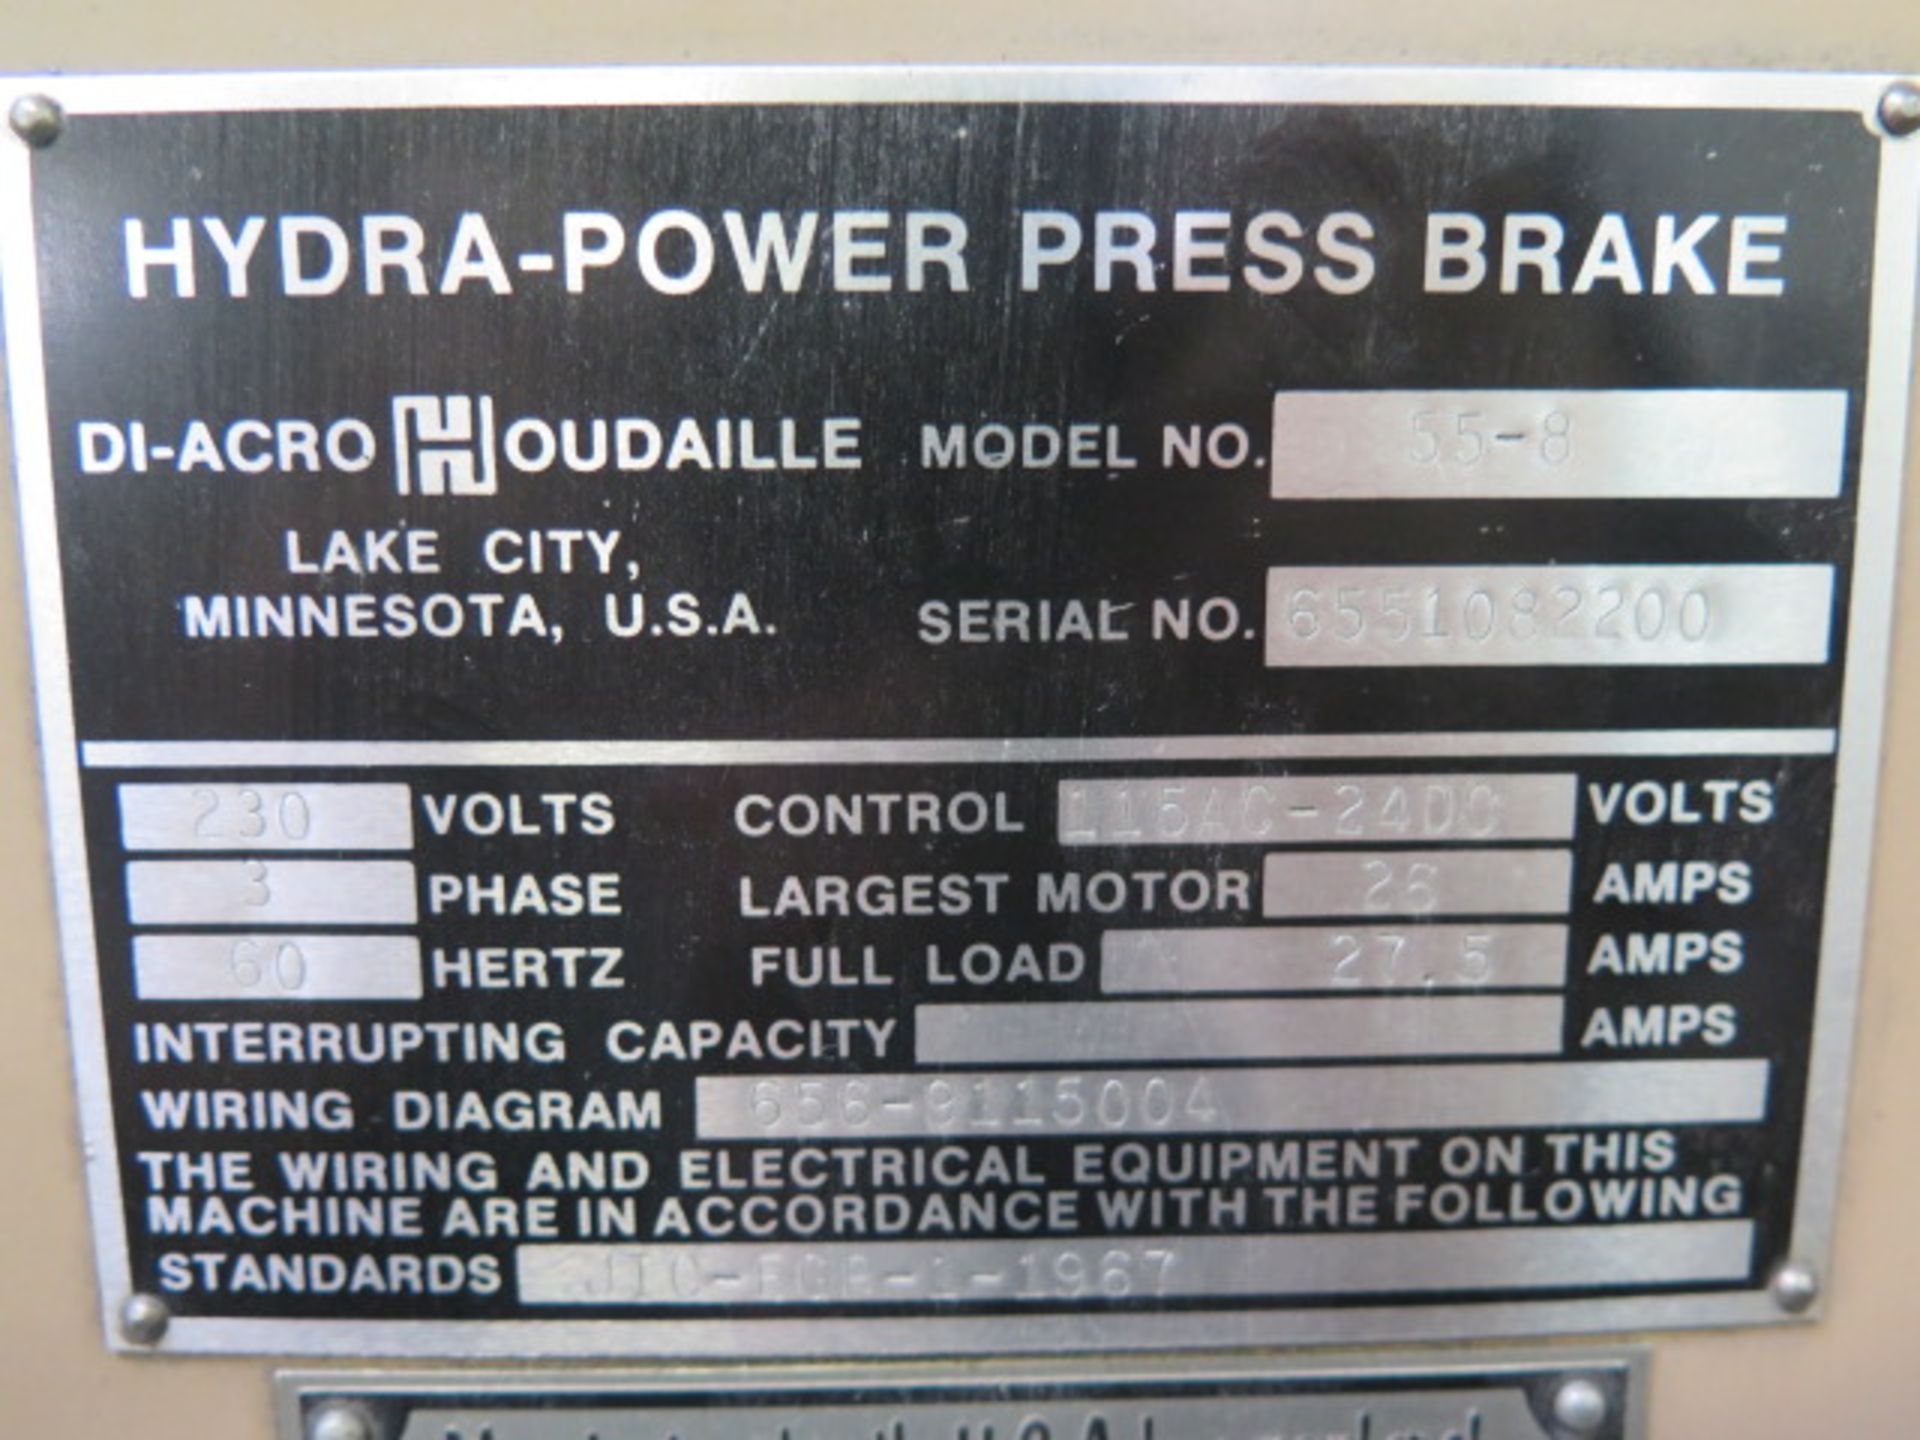 DiAcro 55-8 55 Ton x 8’ Hydra-Power CNC Press Brake s/n 6551082200 w/ DiAcro CNC Controls - Image 16 of 16